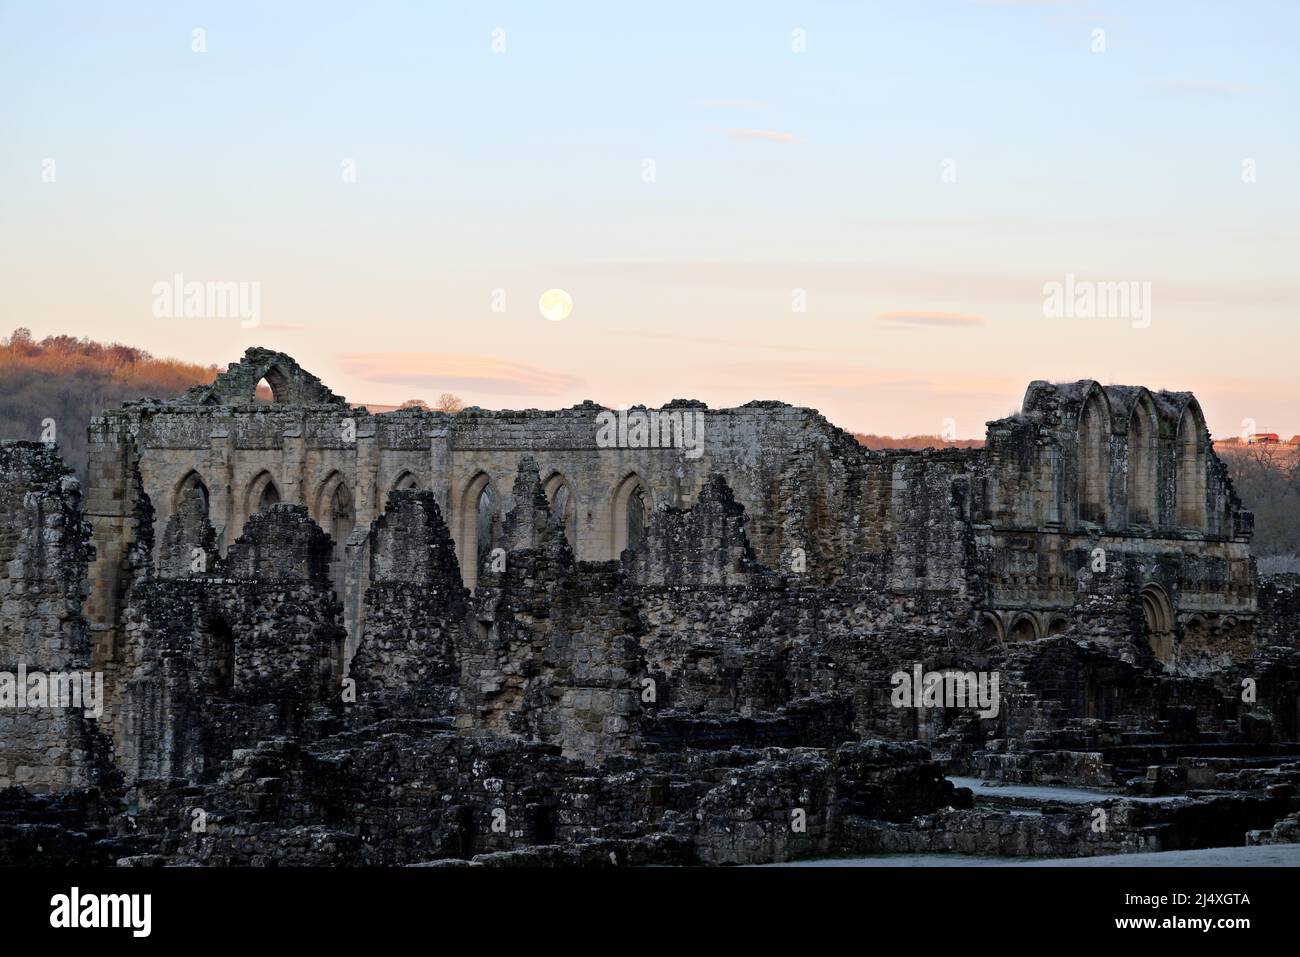 La pared de la casa de calentamiento detrás de la cual es el refectorio de la abadía cisterciense de Rievaulx en ruinas al amanecer y después de que la luna se haya levantado Foto de stock